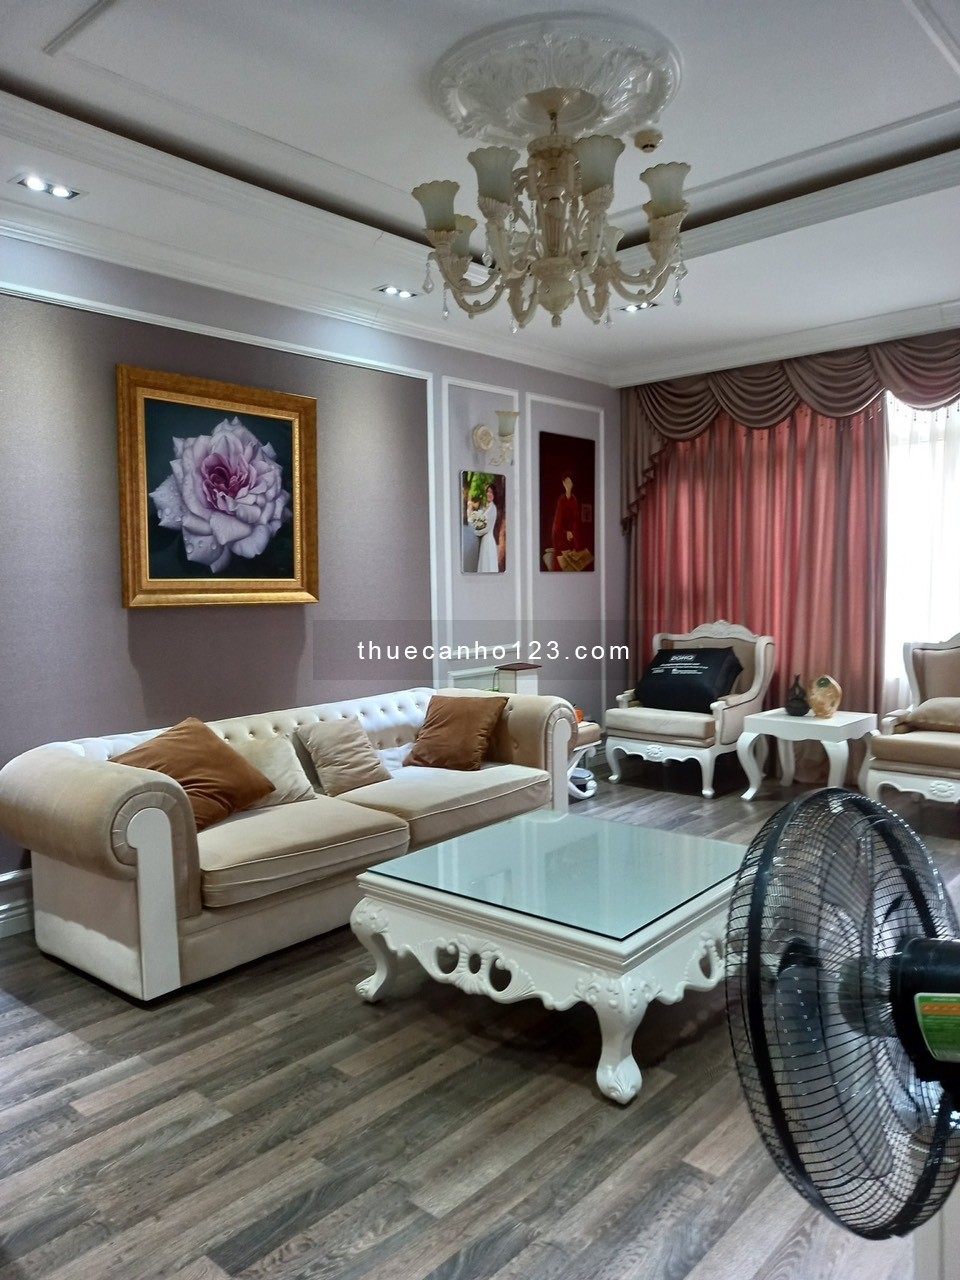 Cho thuê căn hộ chung cư Saigon Pearl, lầu cao view đẹp, nội thất châu Âu giá 28 triệu/tháng